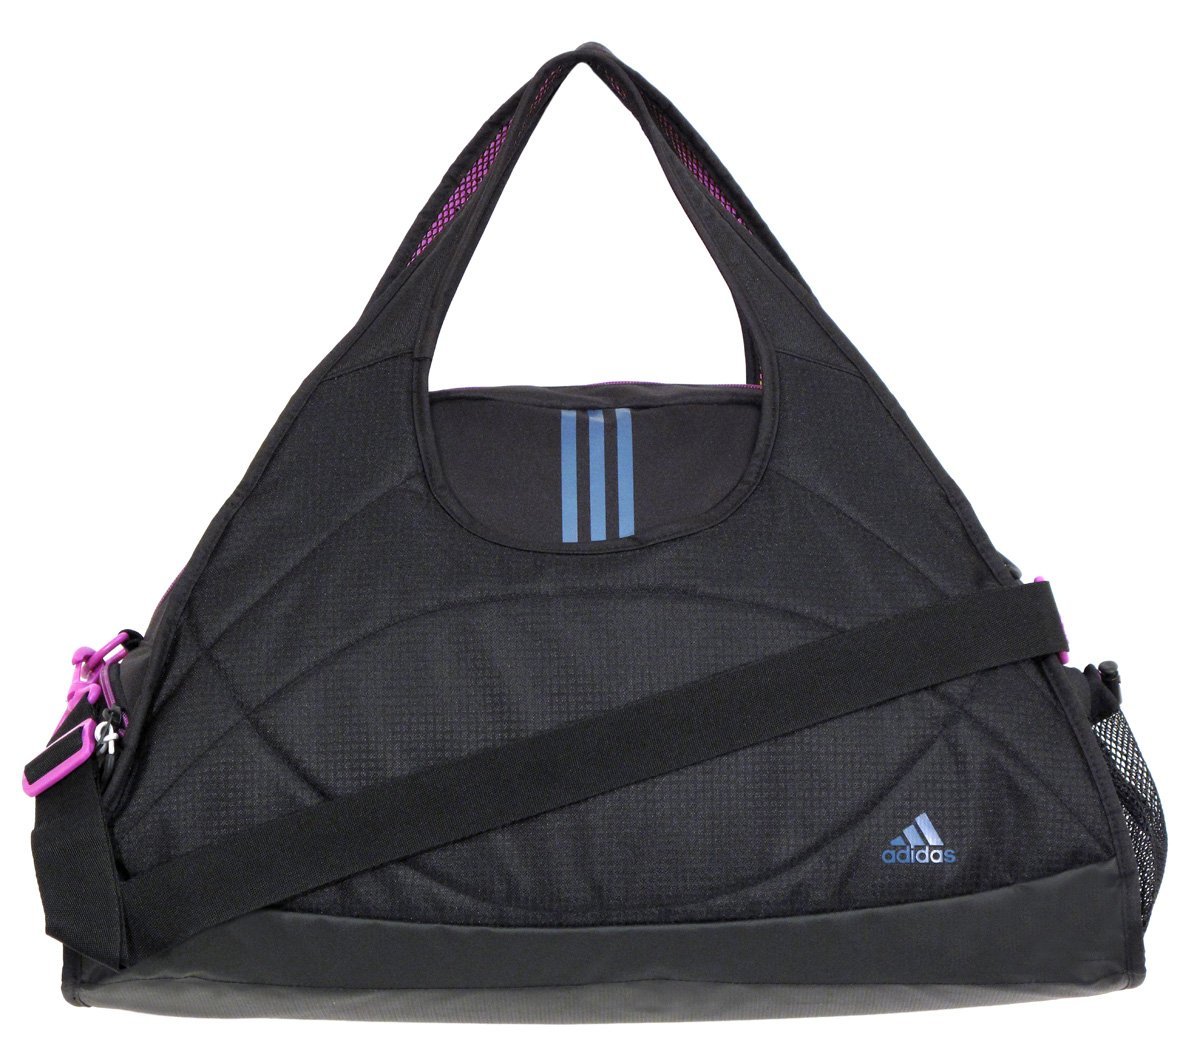 Adidas Ultimate Club Gym Bag - Women Purse